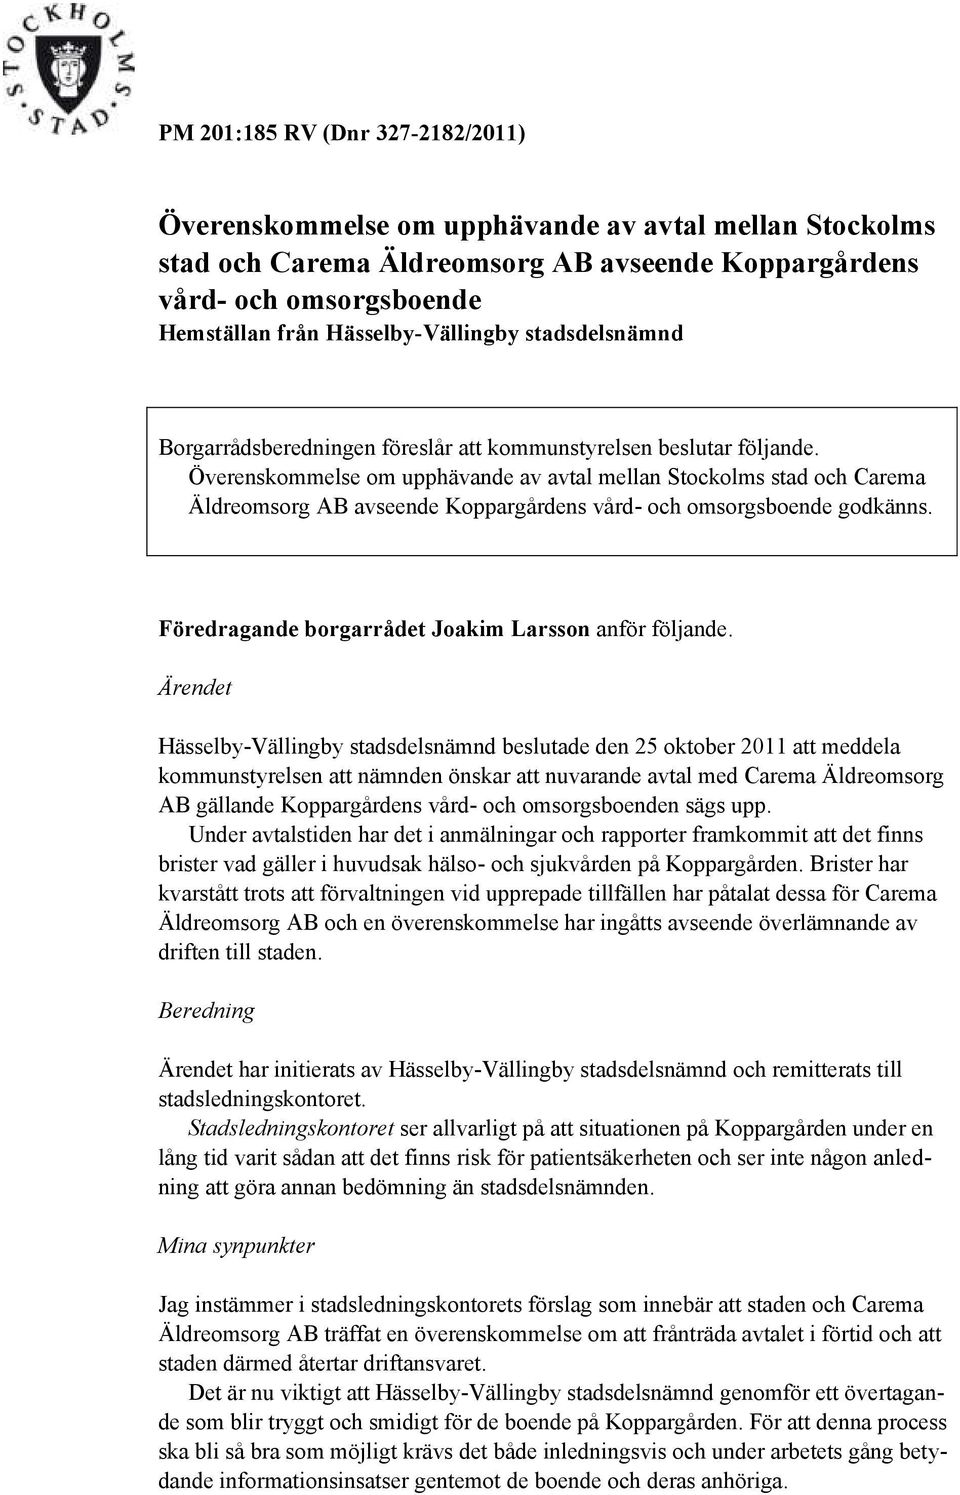 Överenskommelse om upphävande av avtal mellan Stockolms stad och Carema Äldreomsorg AB avseende Koppargårdens vård- och omsorgsboende godkänns. Föredragande borgarrådet Joakim Larsson anför följande.